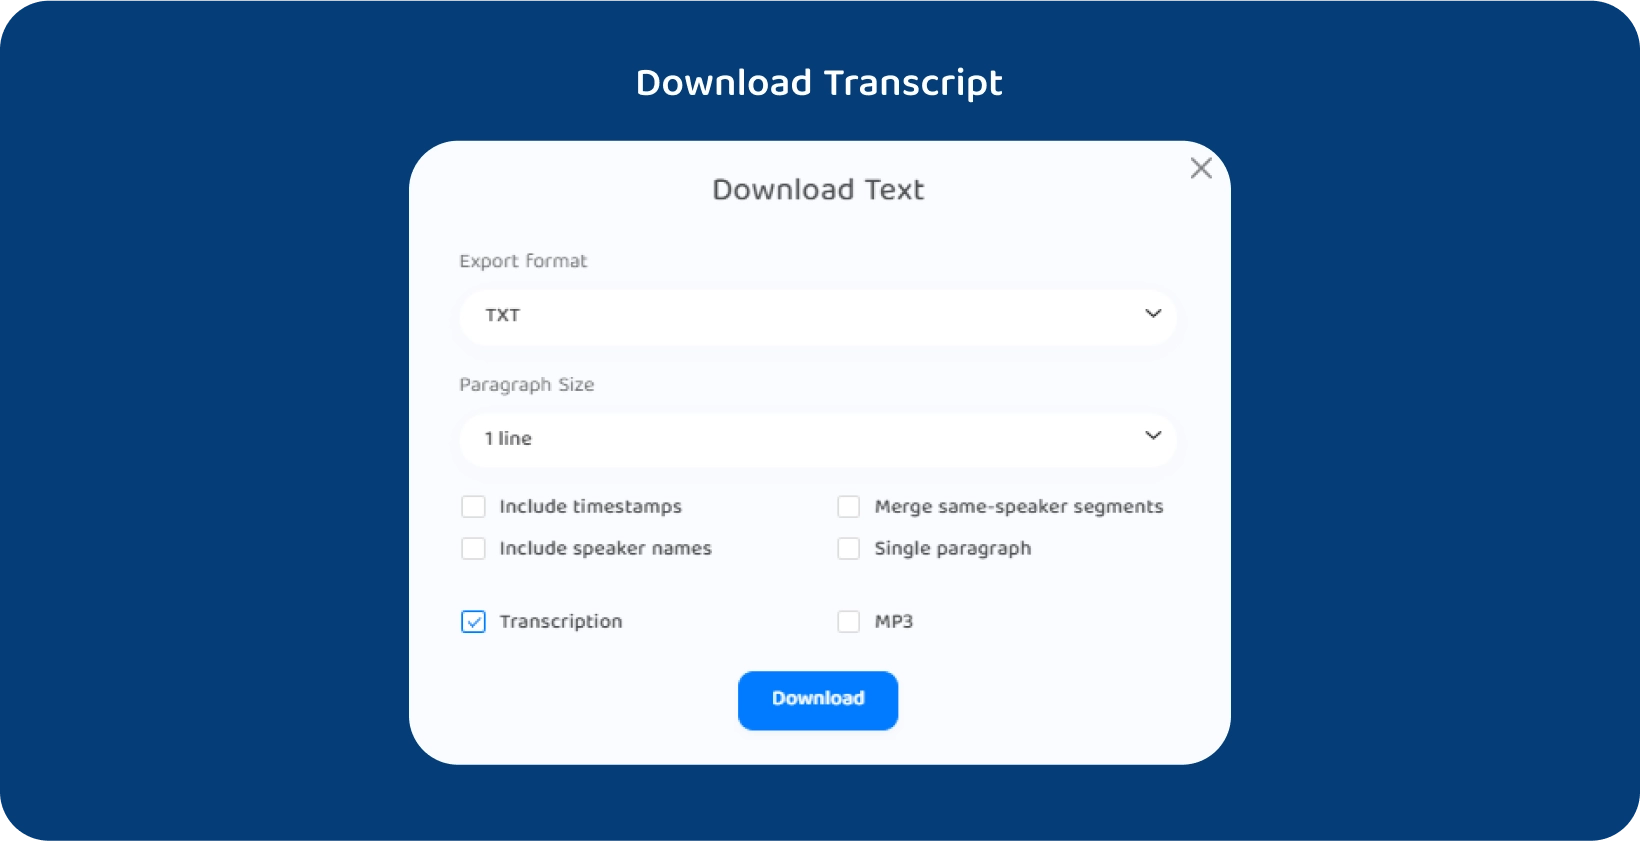 Transkriptor Schnittstelle mit Optionen zum Herunterladen des Textes einer transkribierten Vorlesung.